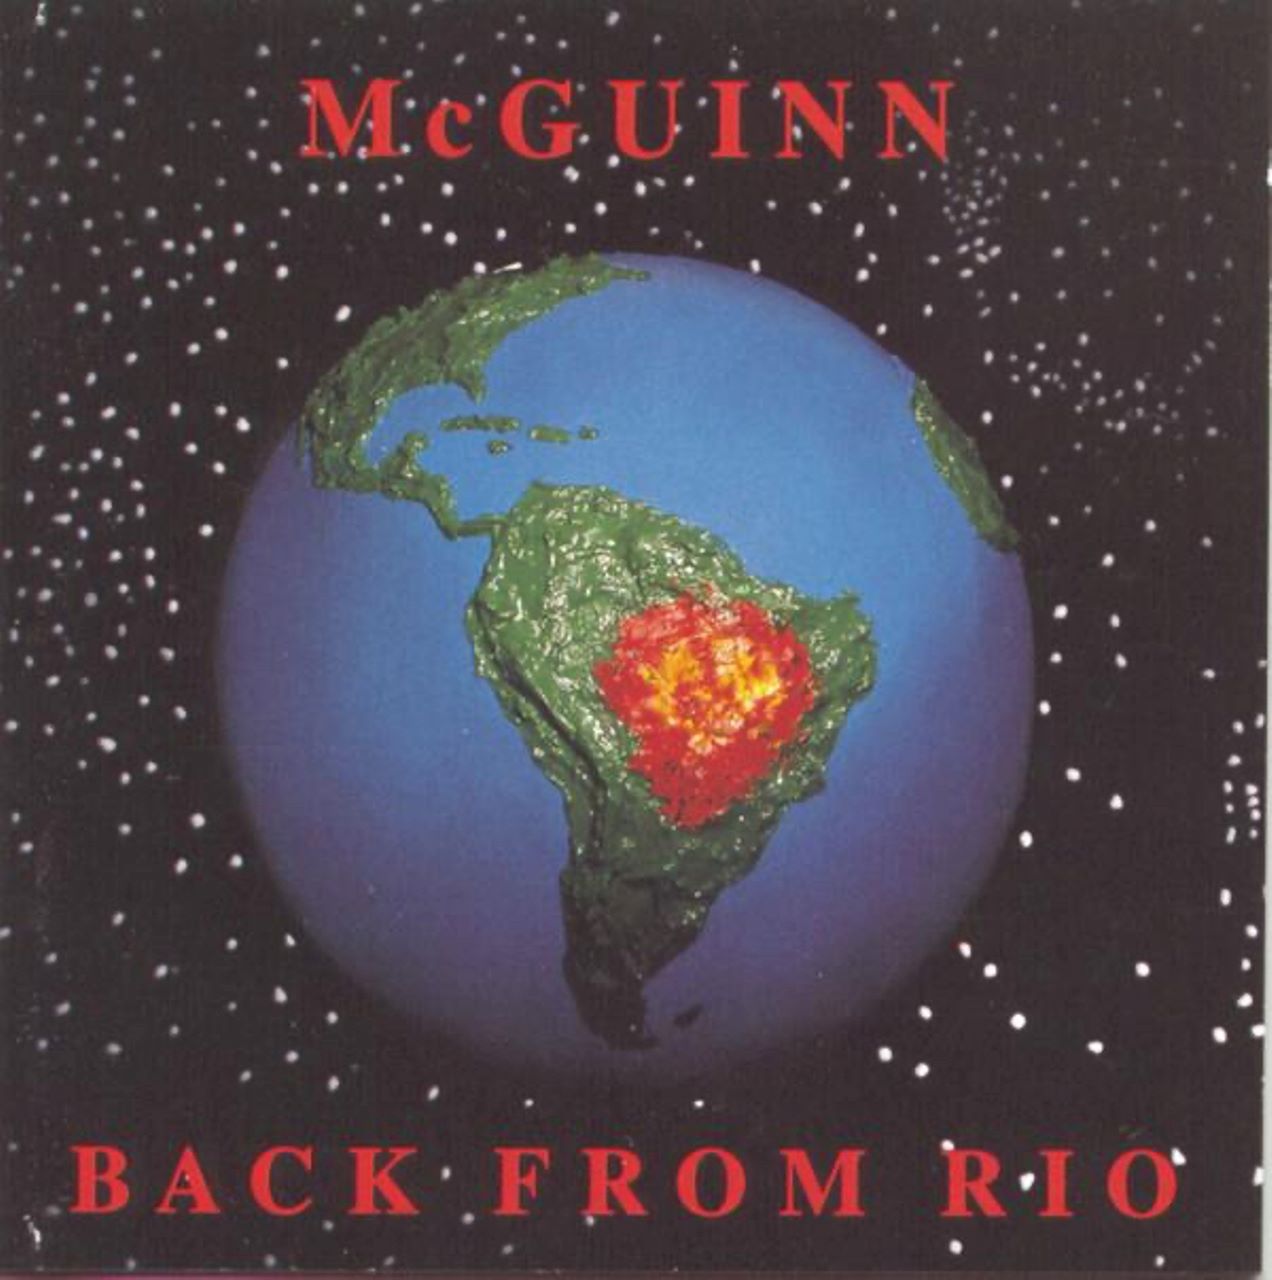 Roger McGuinn - Back From Rio cover album